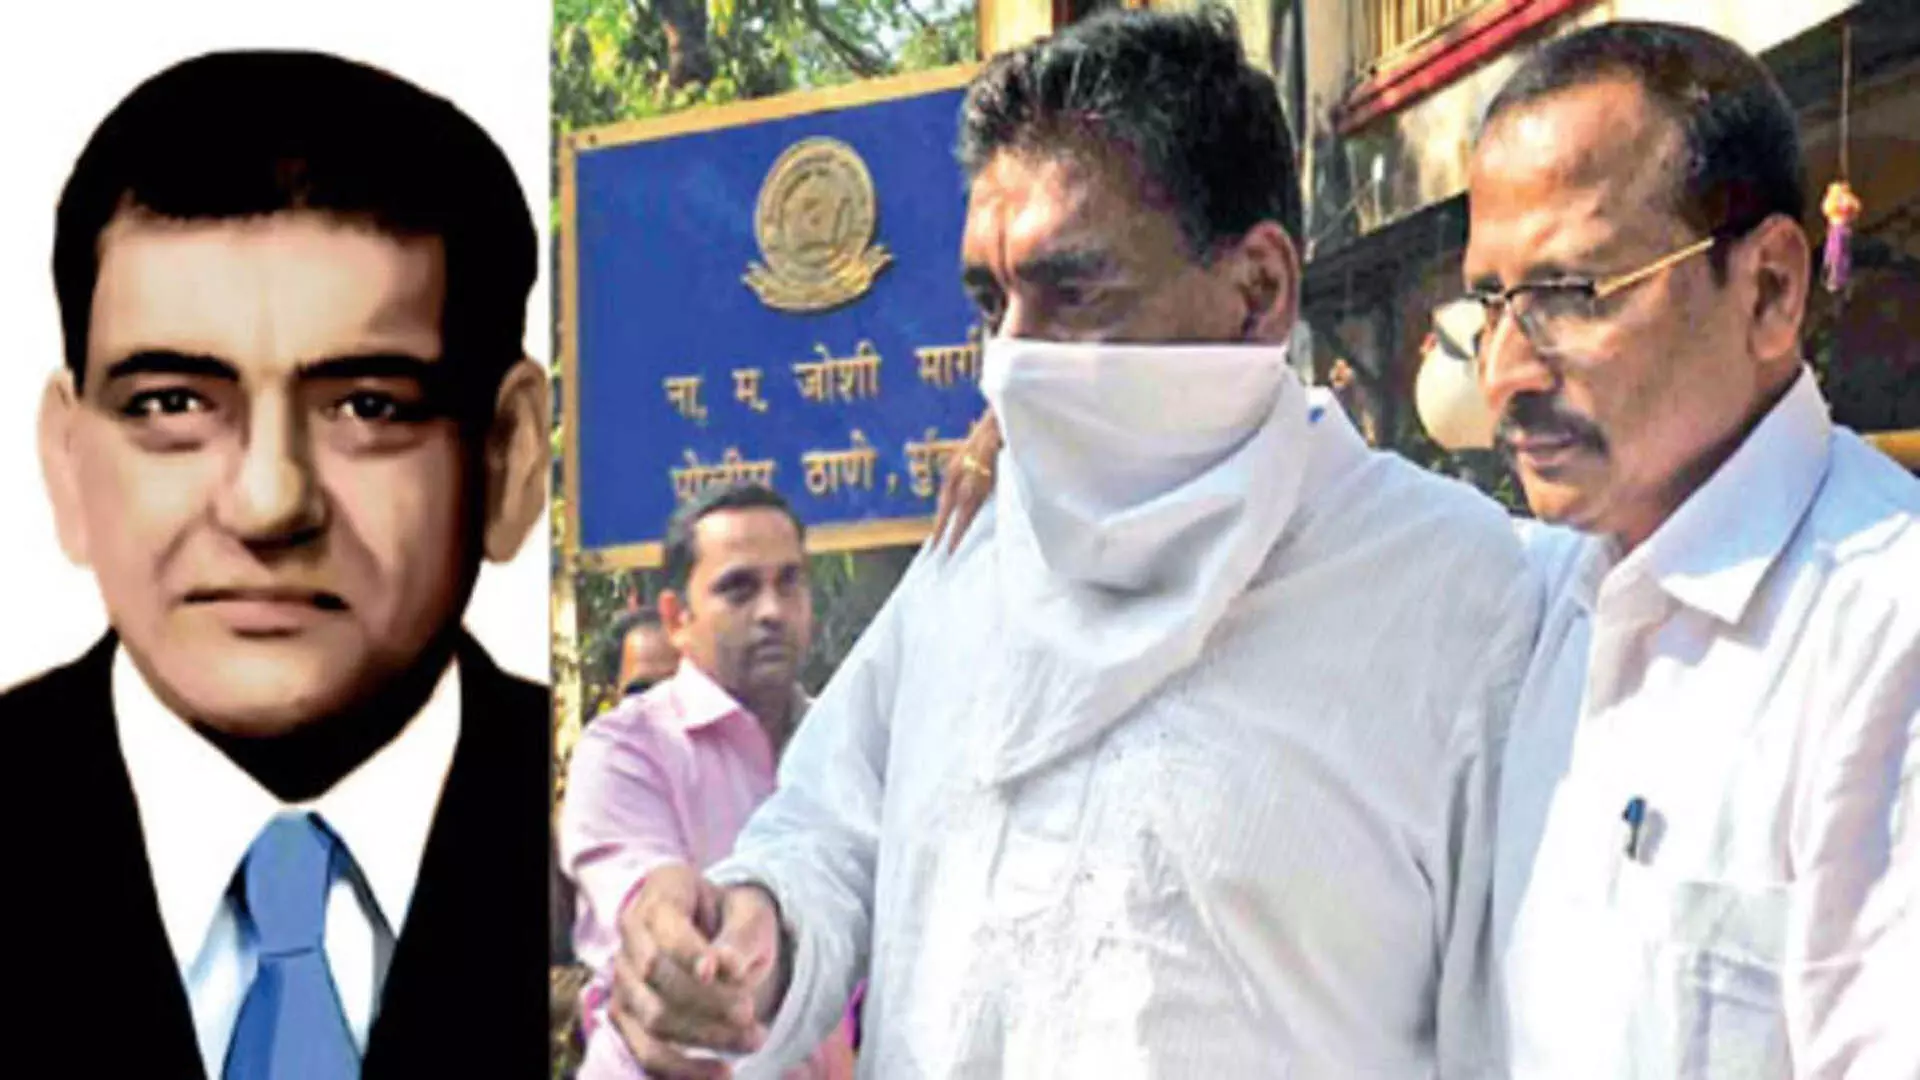 MUMBAI: मजिस्ट्रेट कोर्ट ने कमला मिल्स के मालिक रमेश गोवानी की जमानत याचिका खारिज कर दी